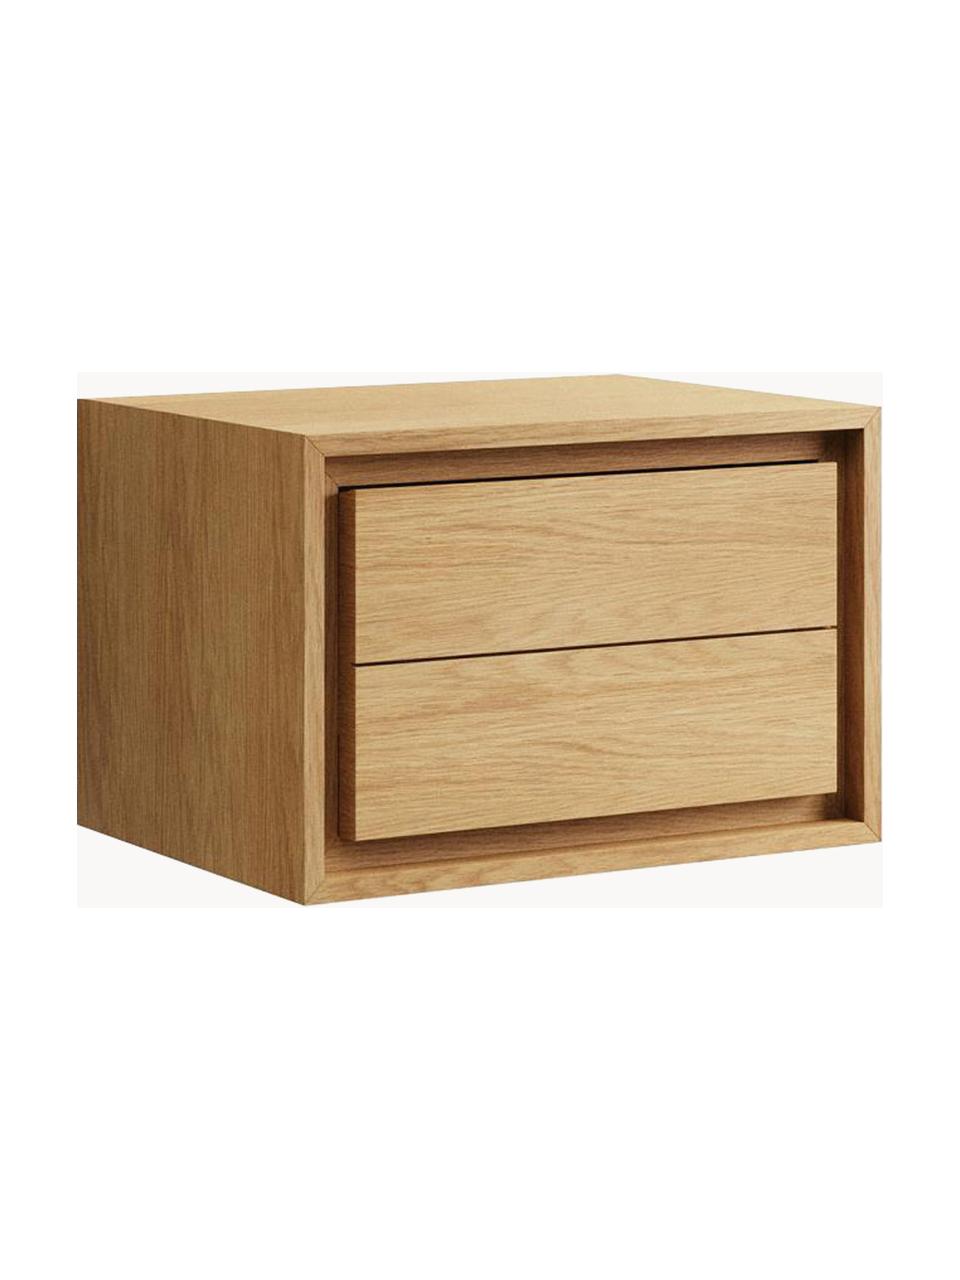 Umyvadlová skříňka z teakového dřeva Kenta, Teakové dřevo, Teakové dřevo, světlé, Š 60 cm, V 40 cm